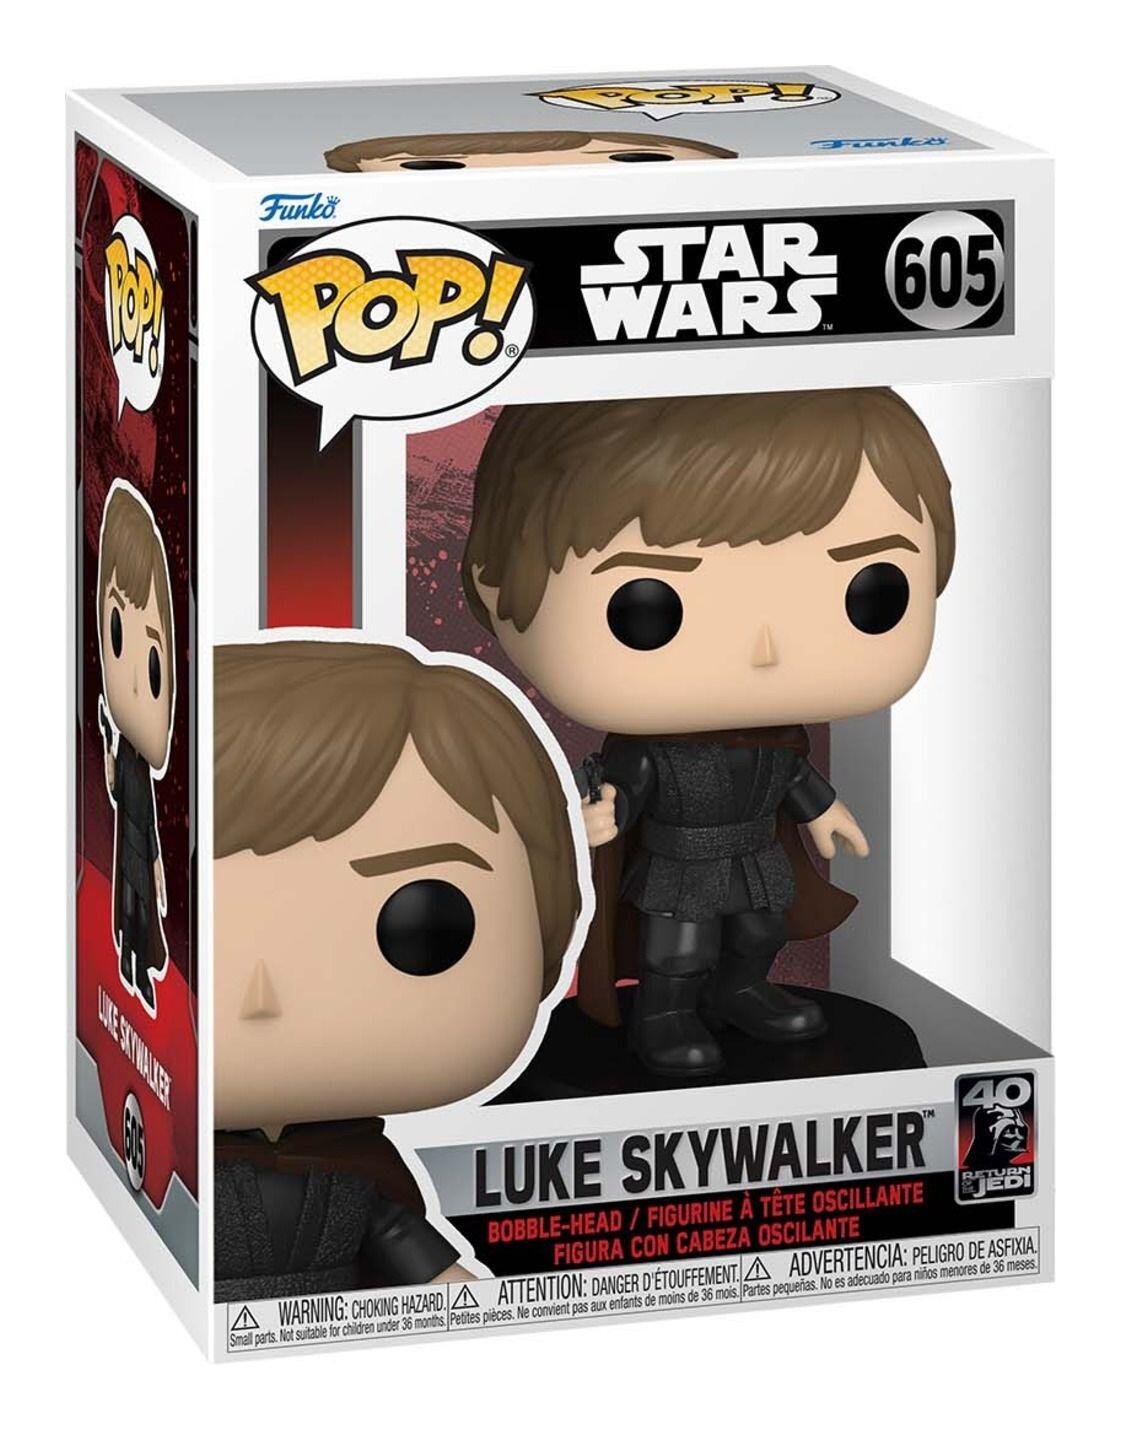 Funko Pop! Star Wars Return of the Jedi - Luke Skywalker - 605